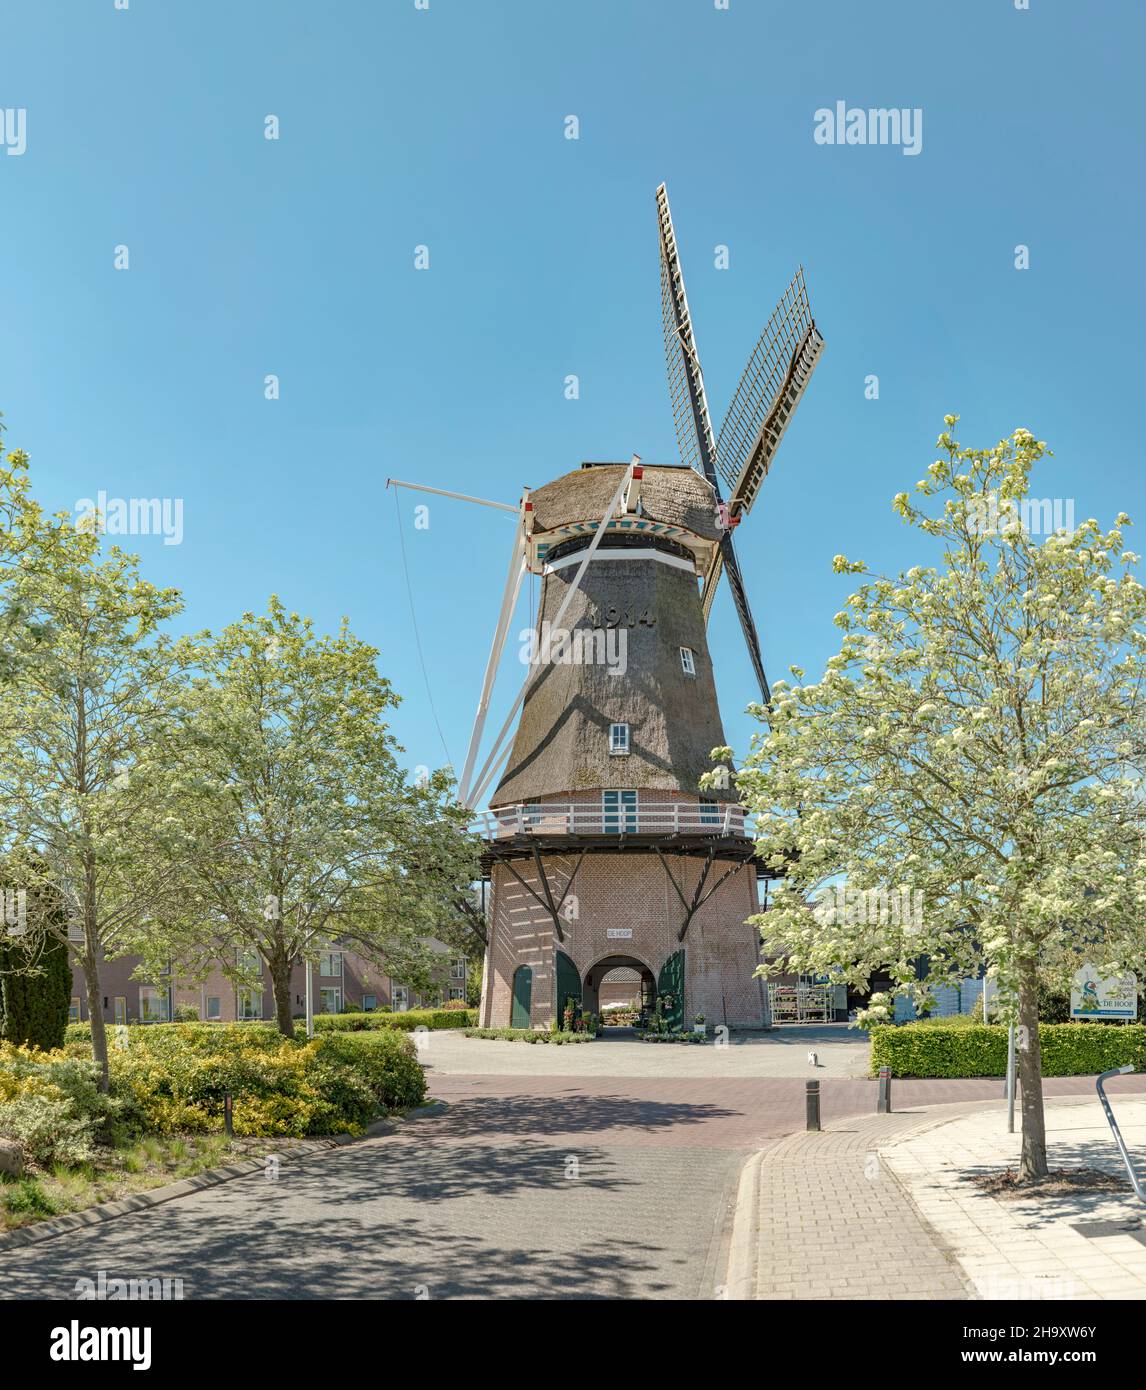 Windmill called De Hoop Stock Photo